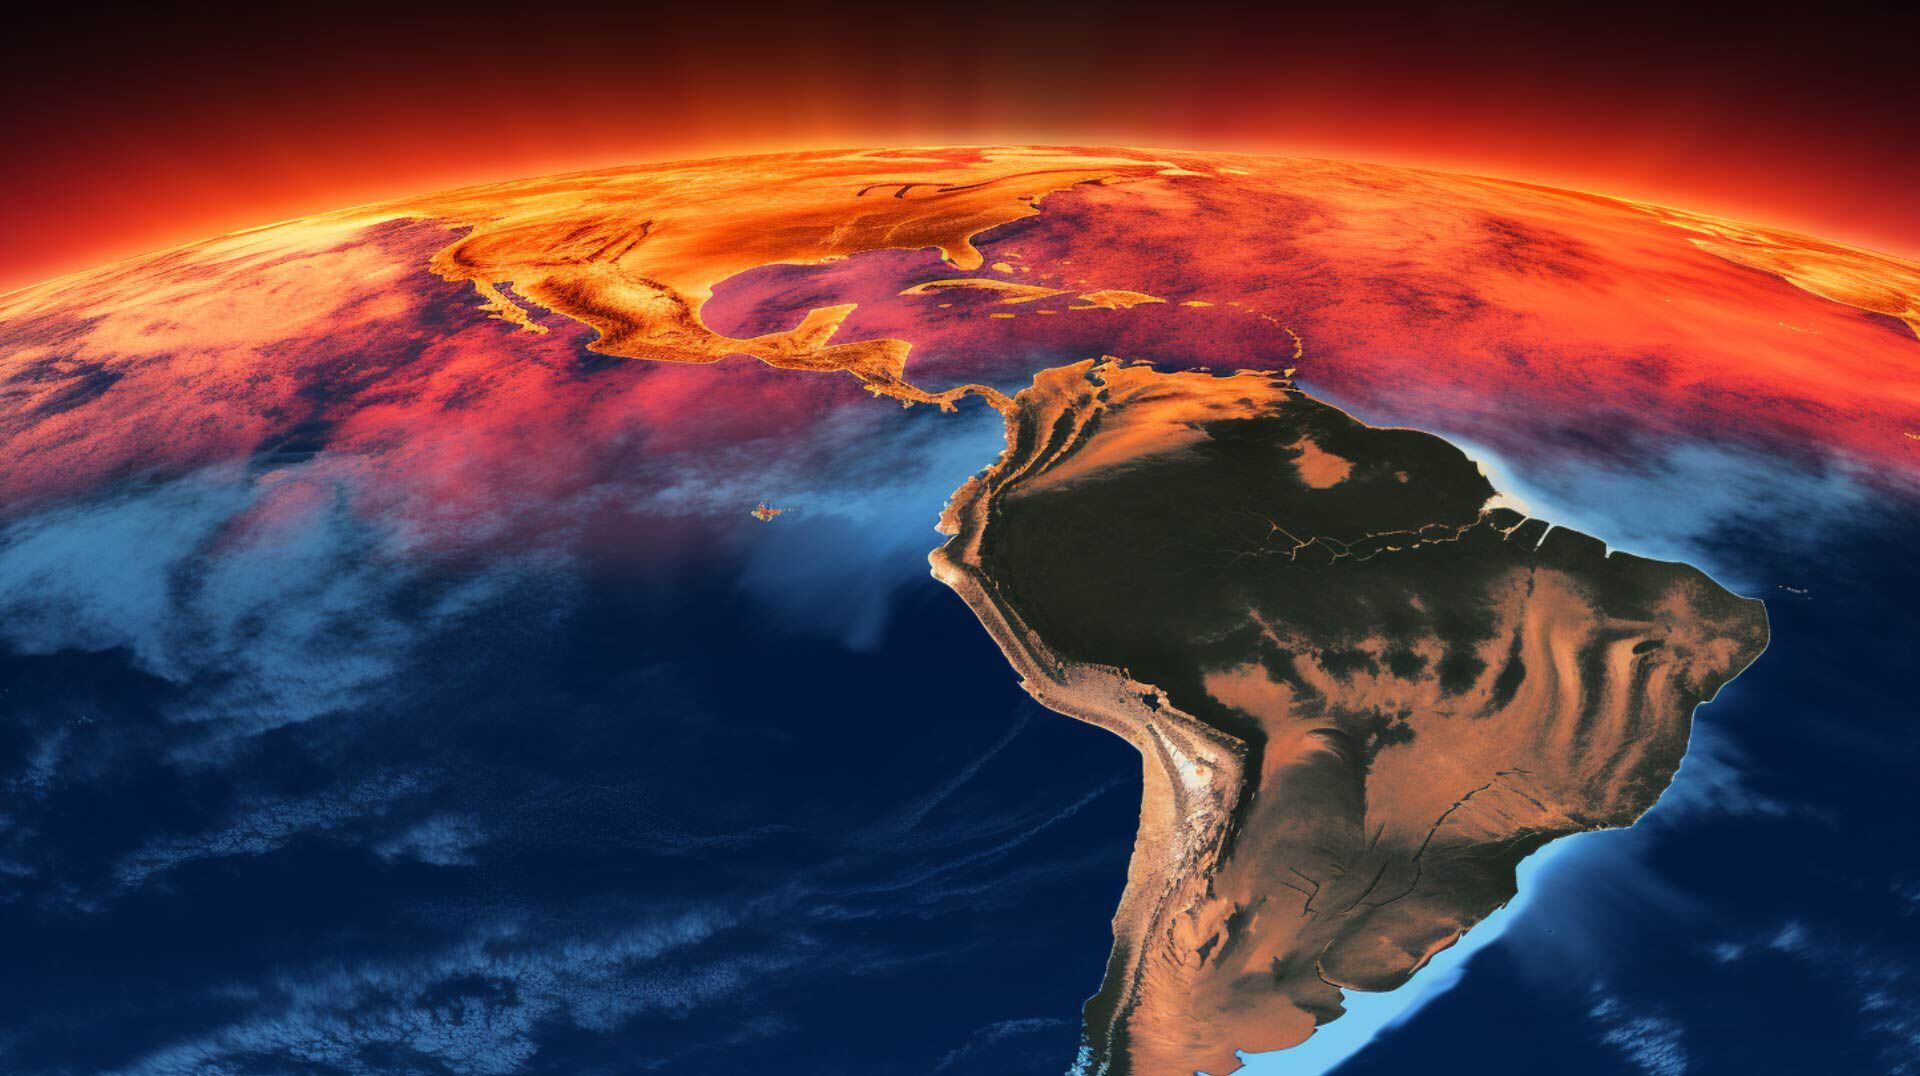 sudamericana bajo un sol abrasador, a pesar de estar en pleno invierno, reflejando la ola de calor sin precedentes que afecta al continente.